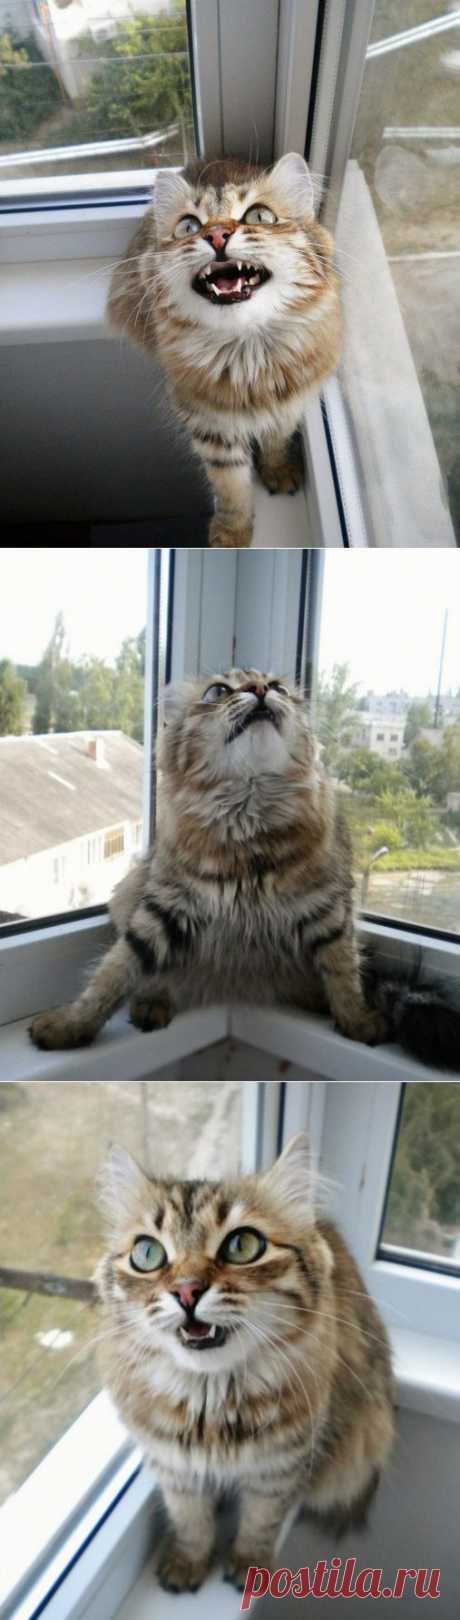 Птички бесятПервая социальная сеть про кошек www.pincat.ru Опубликуй фото своего любимца, веди блог о его жизни! #фото #кошки #cat